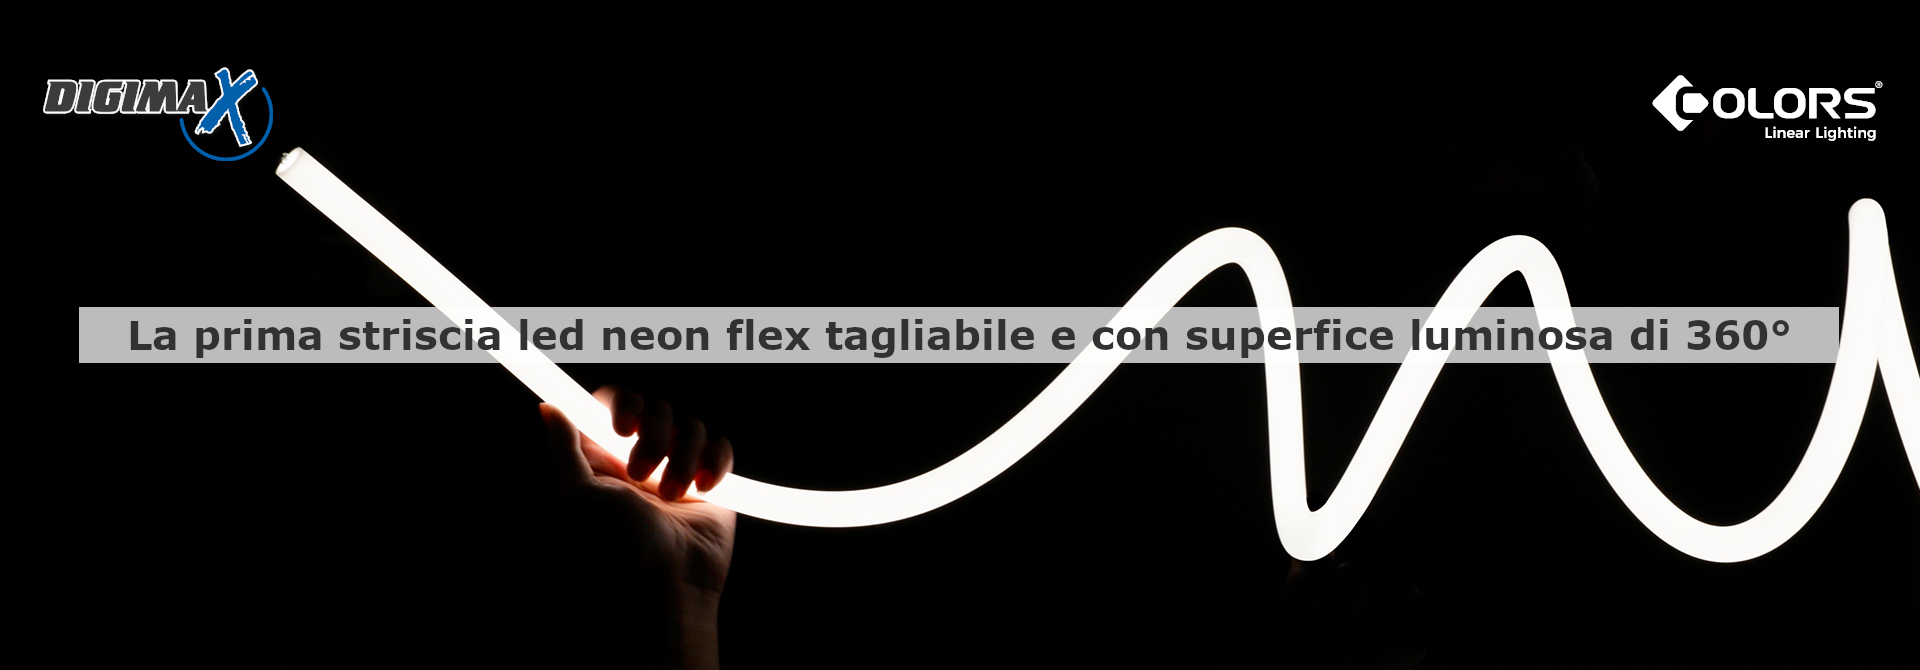 La prima striscia led neon flex tagliabile e con superfice luminosa di 360°